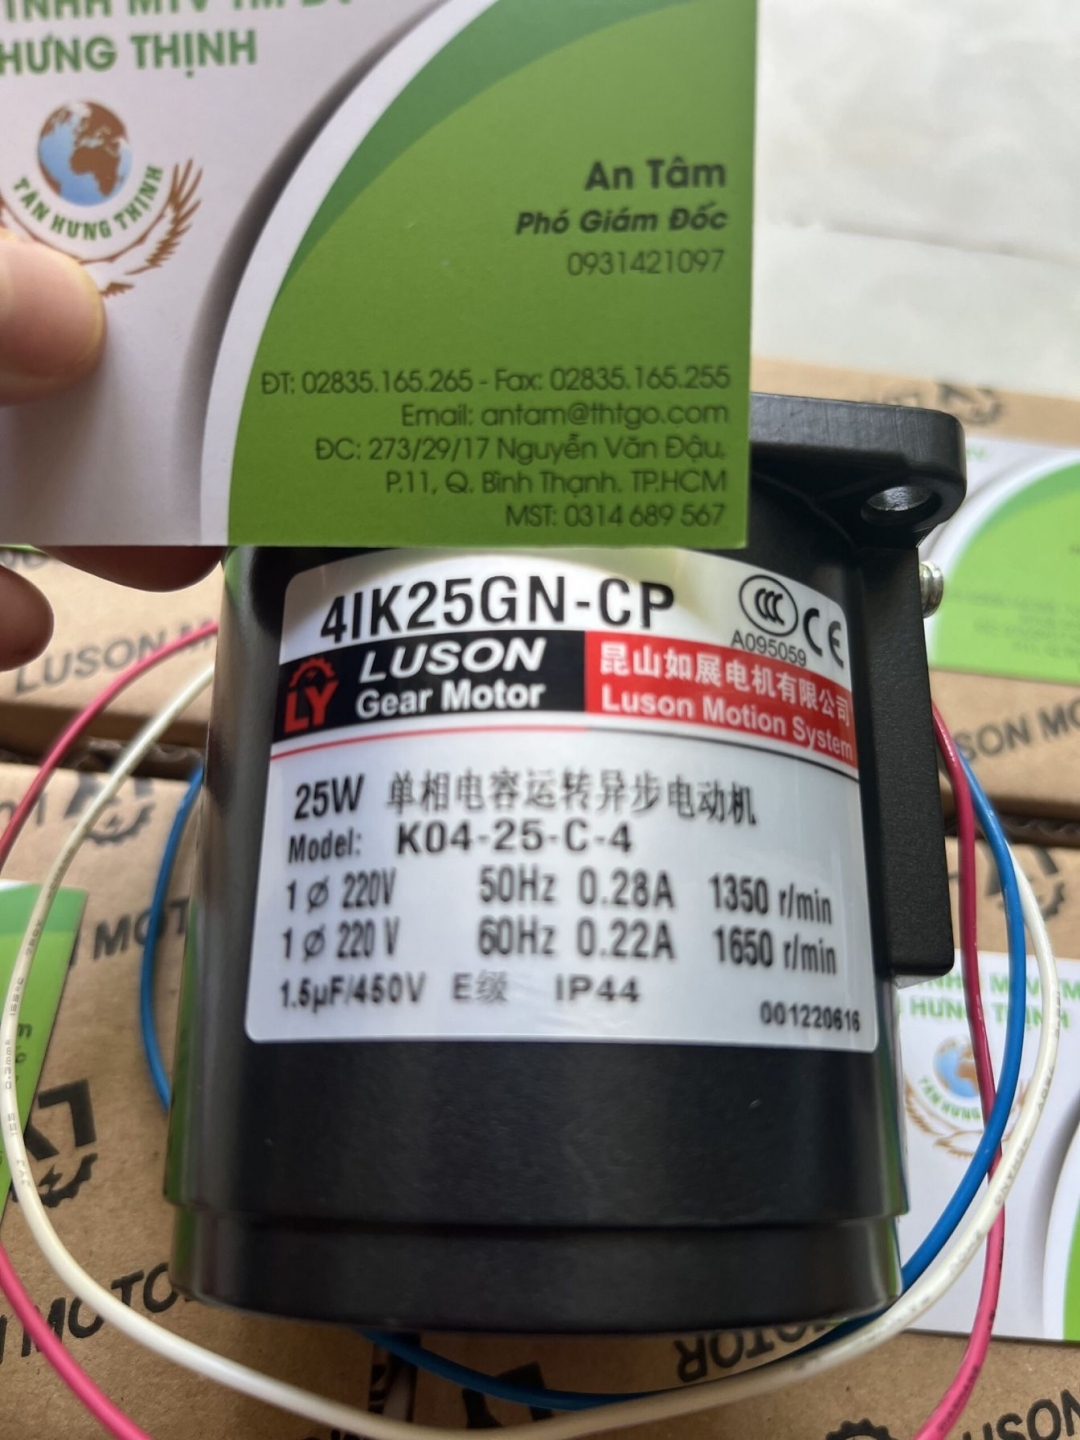 Luson gear 4IK25GN-CP